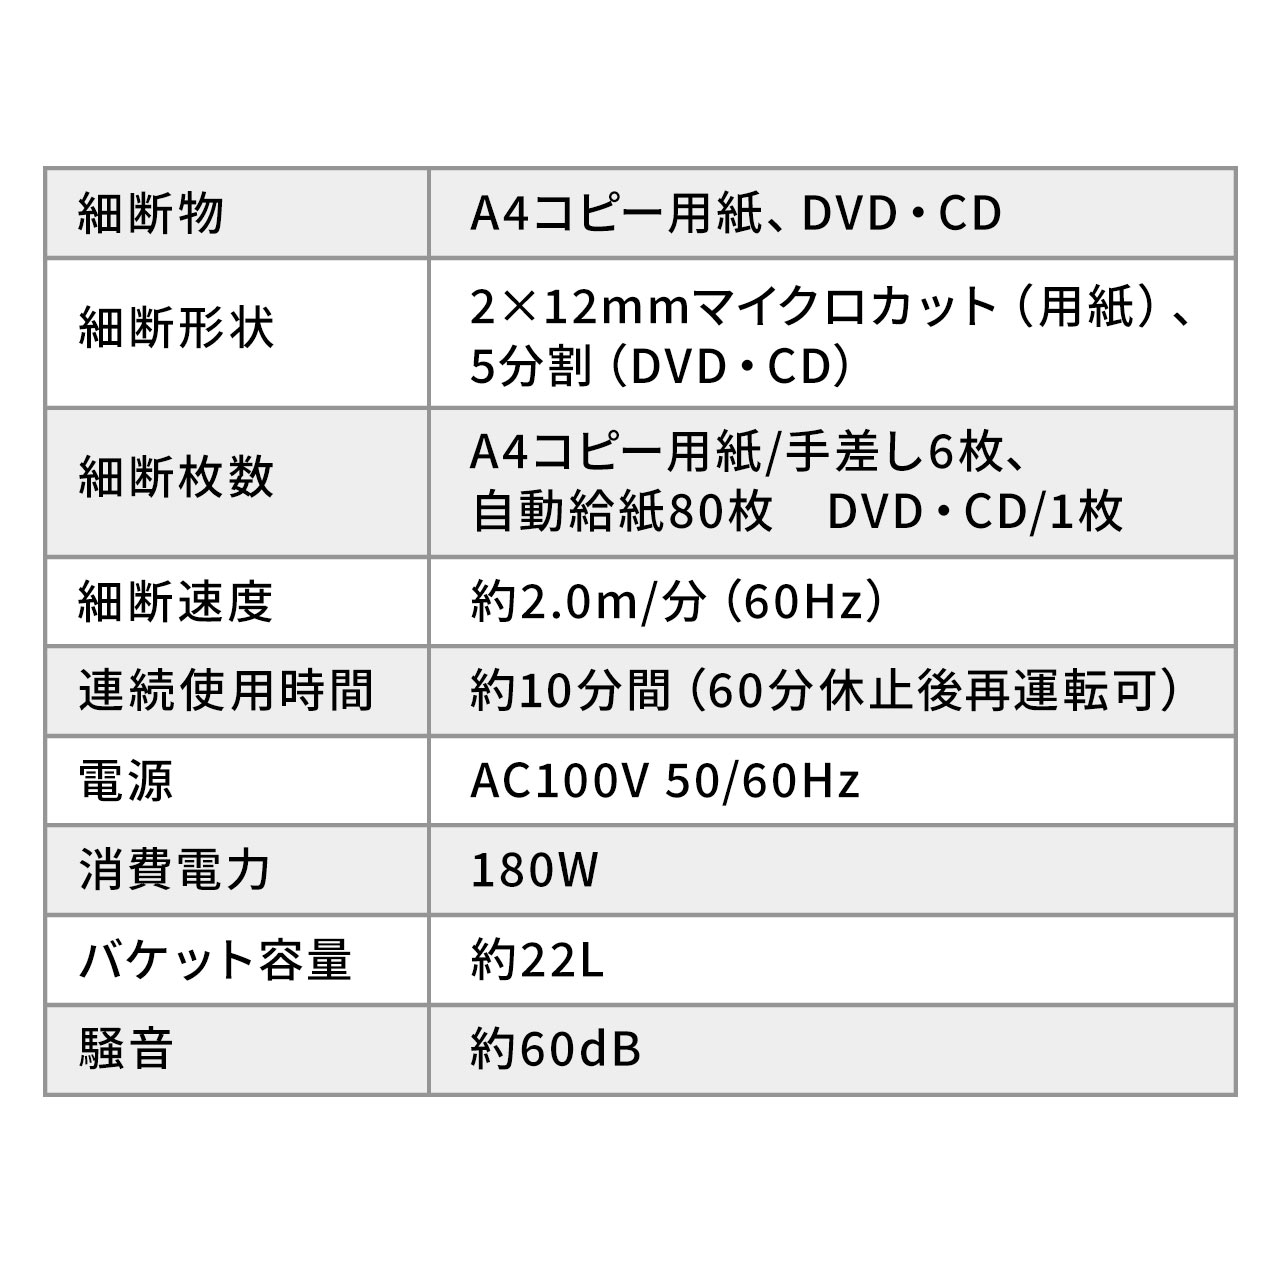 I[gtB[hVb_[ ƖpVb_[ }CNJbg 2~12mm A 80 荷גf 10Aגf DVD/CD 23L 400-PSD040